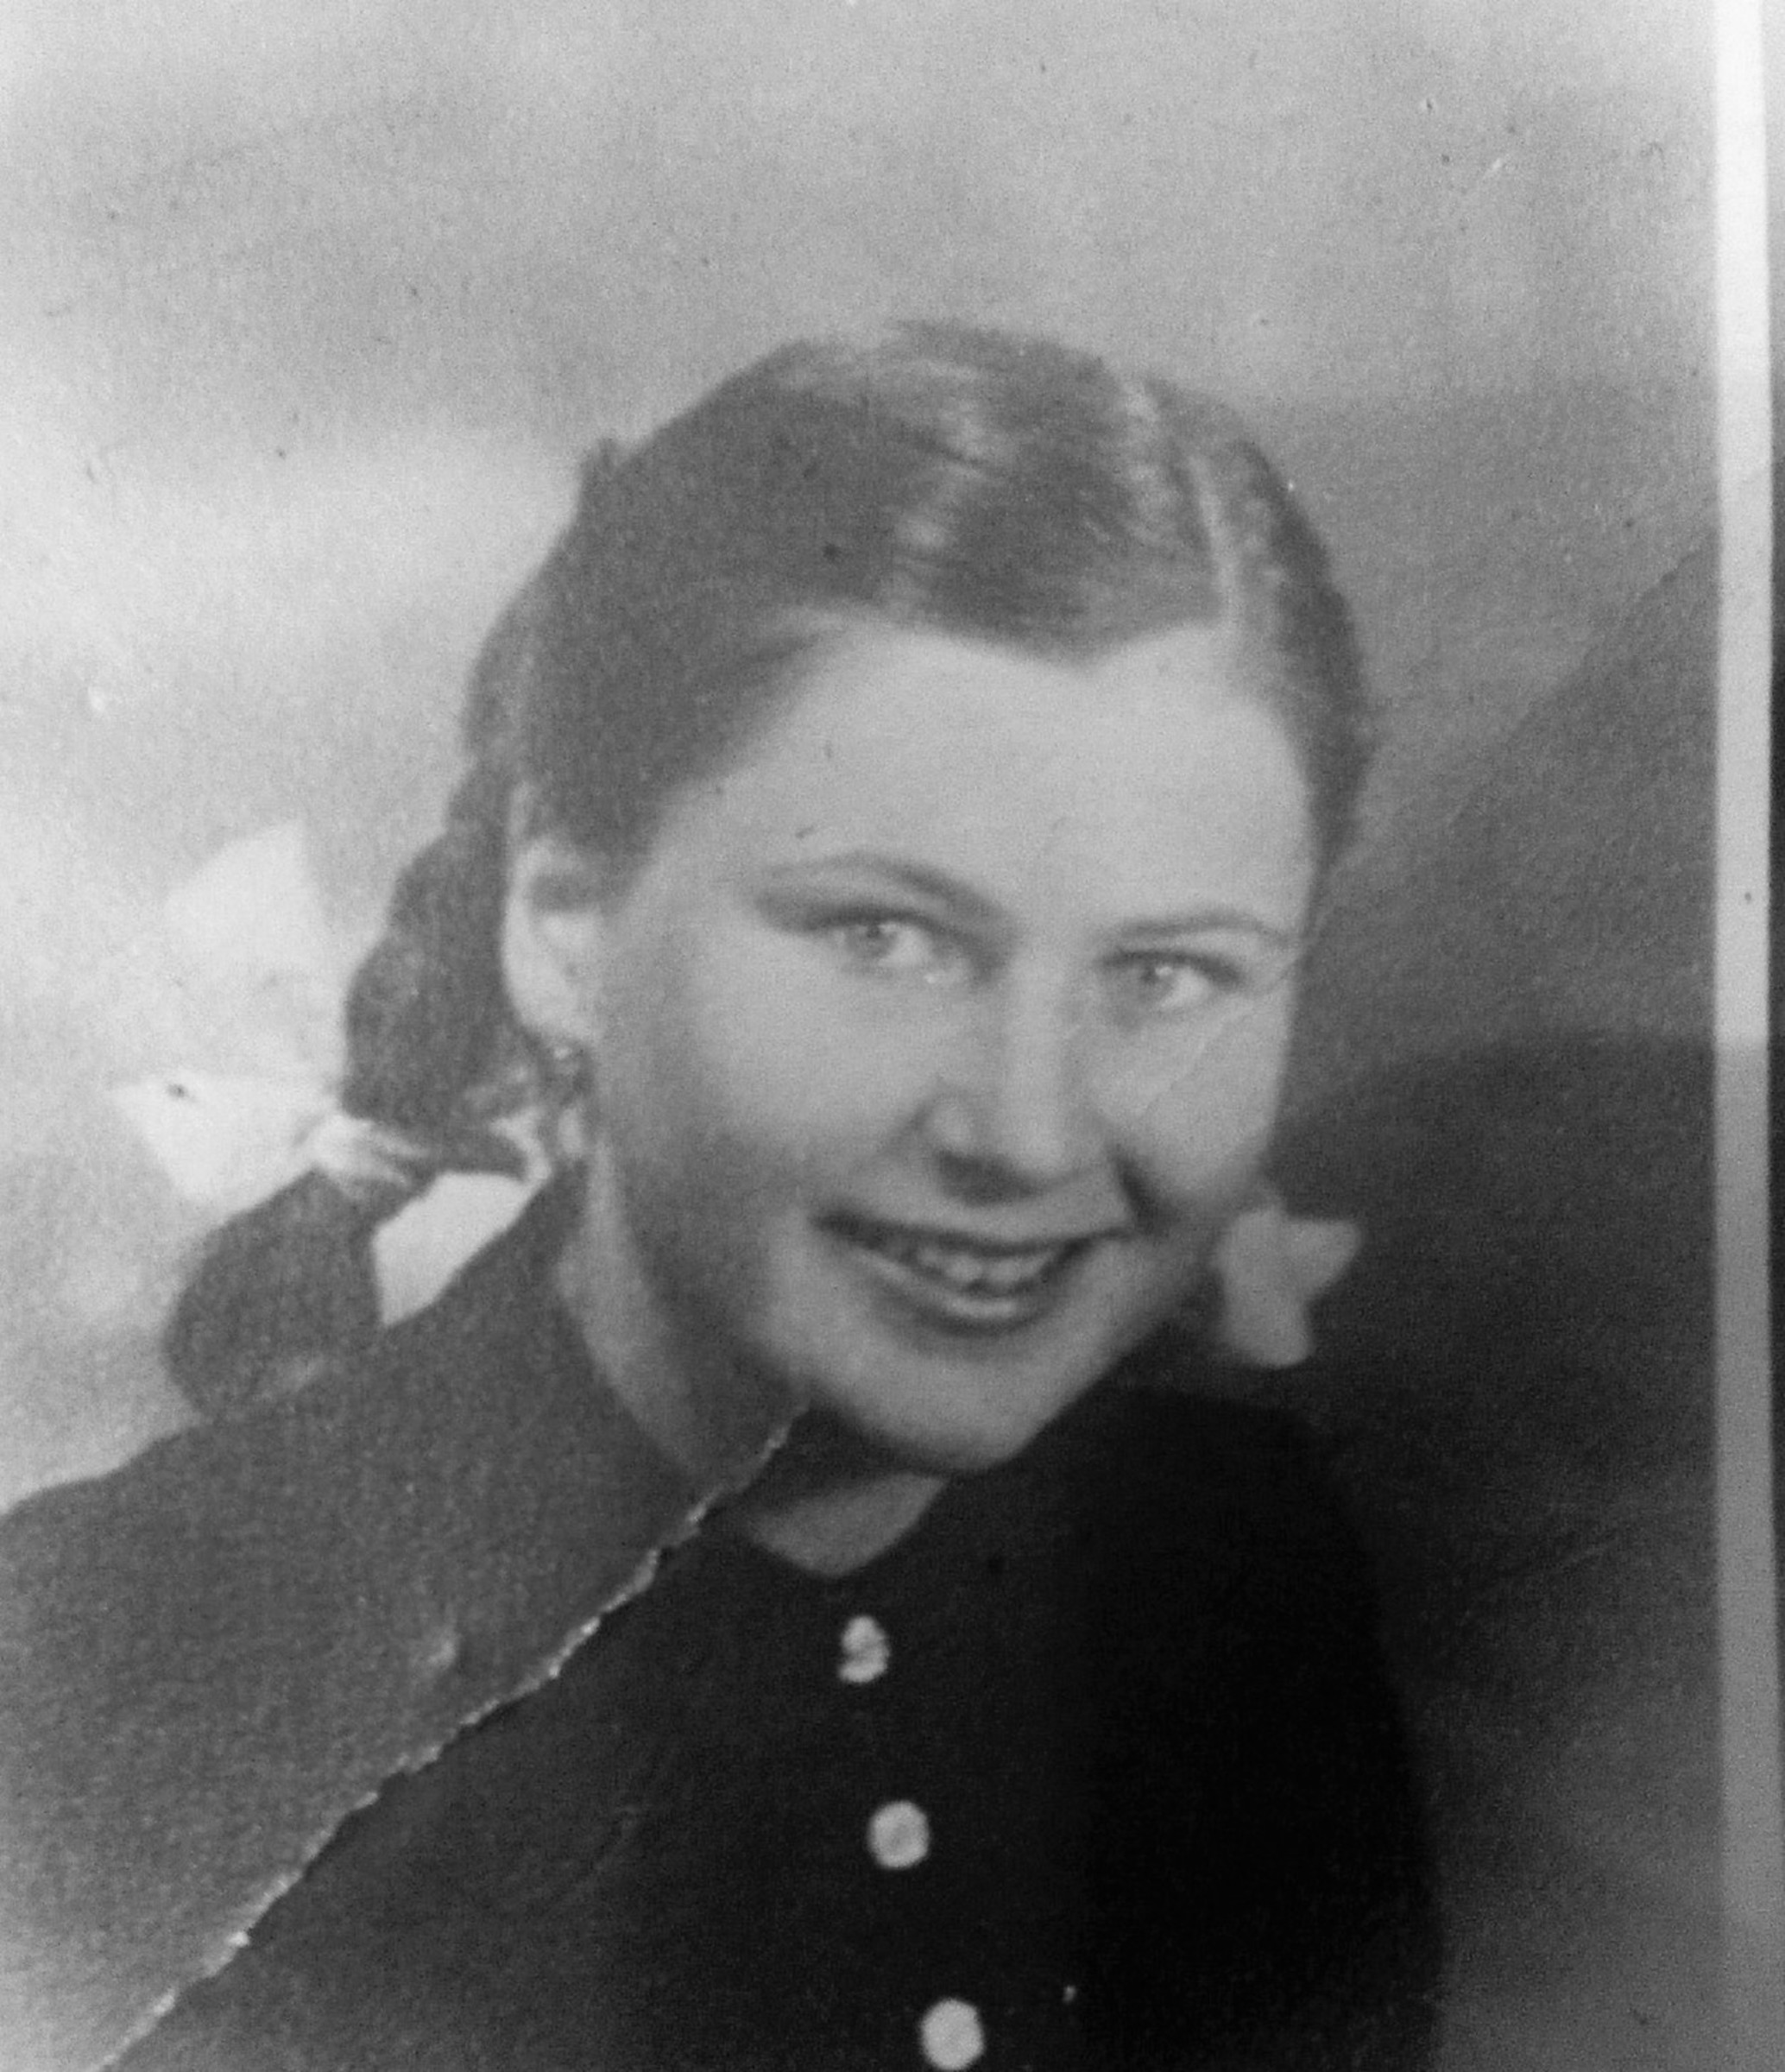 Katarína Skalová (married Bendová ) shortly after the end of the war - in her 16 years